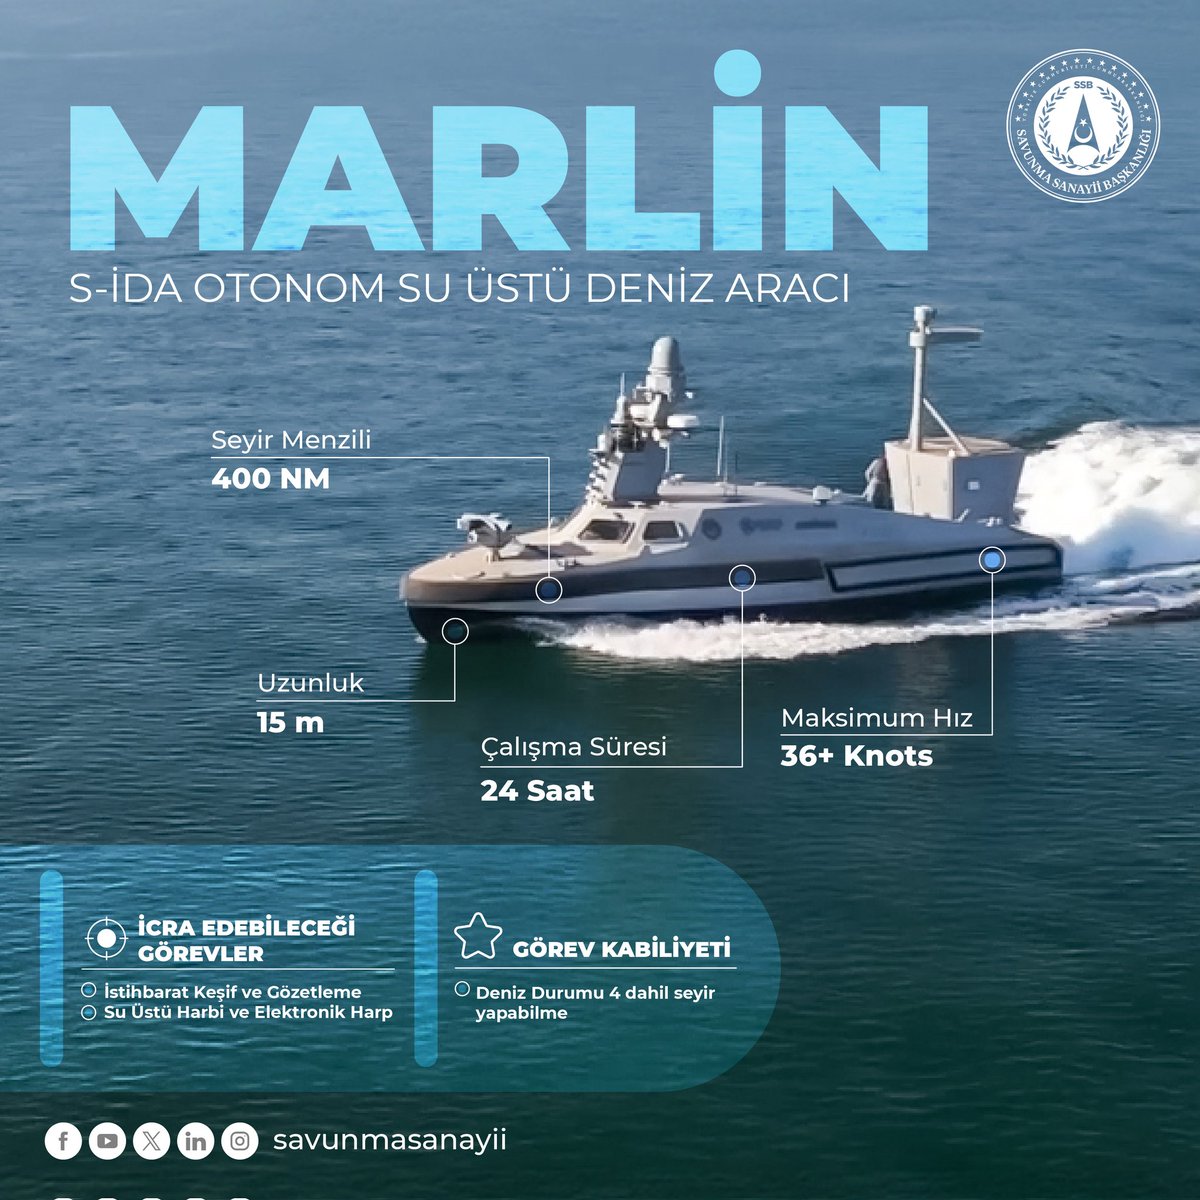 🔶🇹🇷En zorlu koşullarda görev yapabilen MARLİN S-İDA, Dünyada elektronik harp kabiliyetine sahip ilk ve tek insansız deniz aracı. #MaviVatan’ın korunmasında önemli bir yer tutacak.